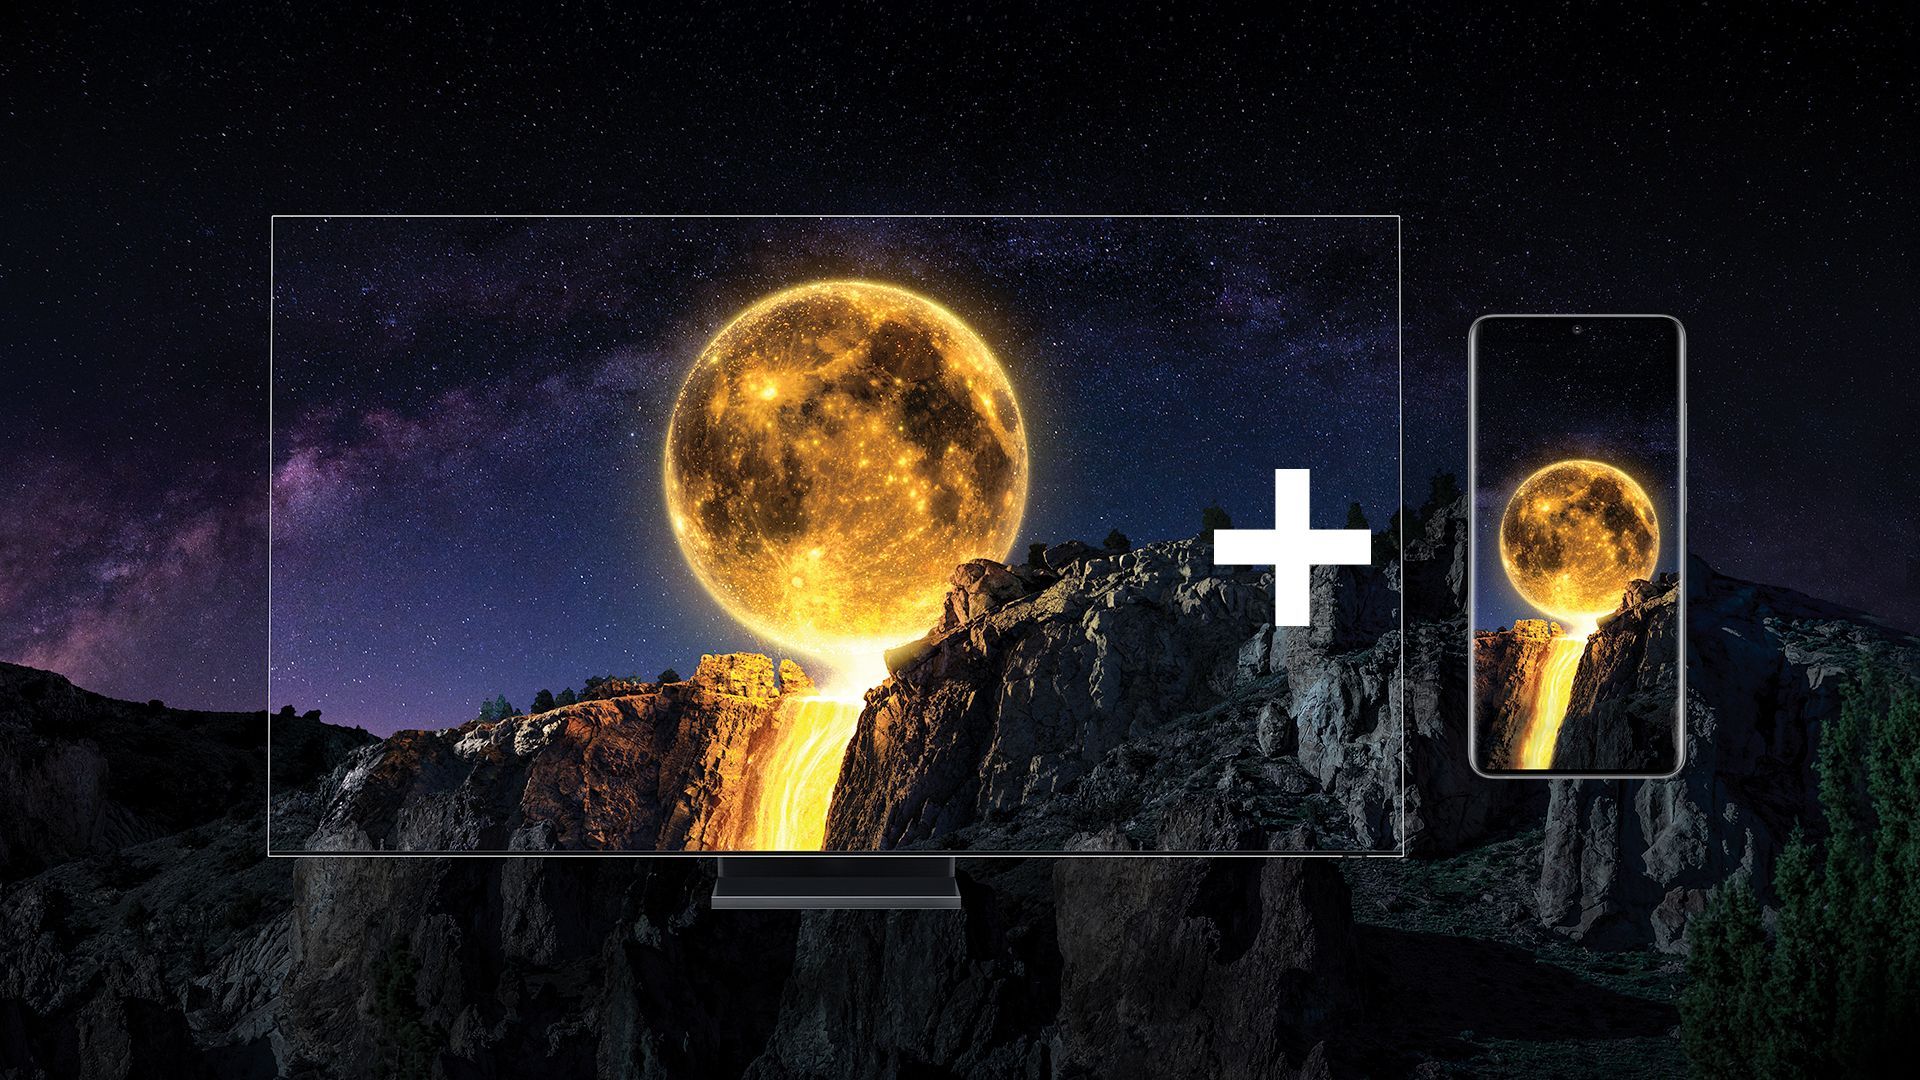 Kupte si QLED TV od Samsungu a získáte telefon Galaxy S20 nebo soundbar zdarma